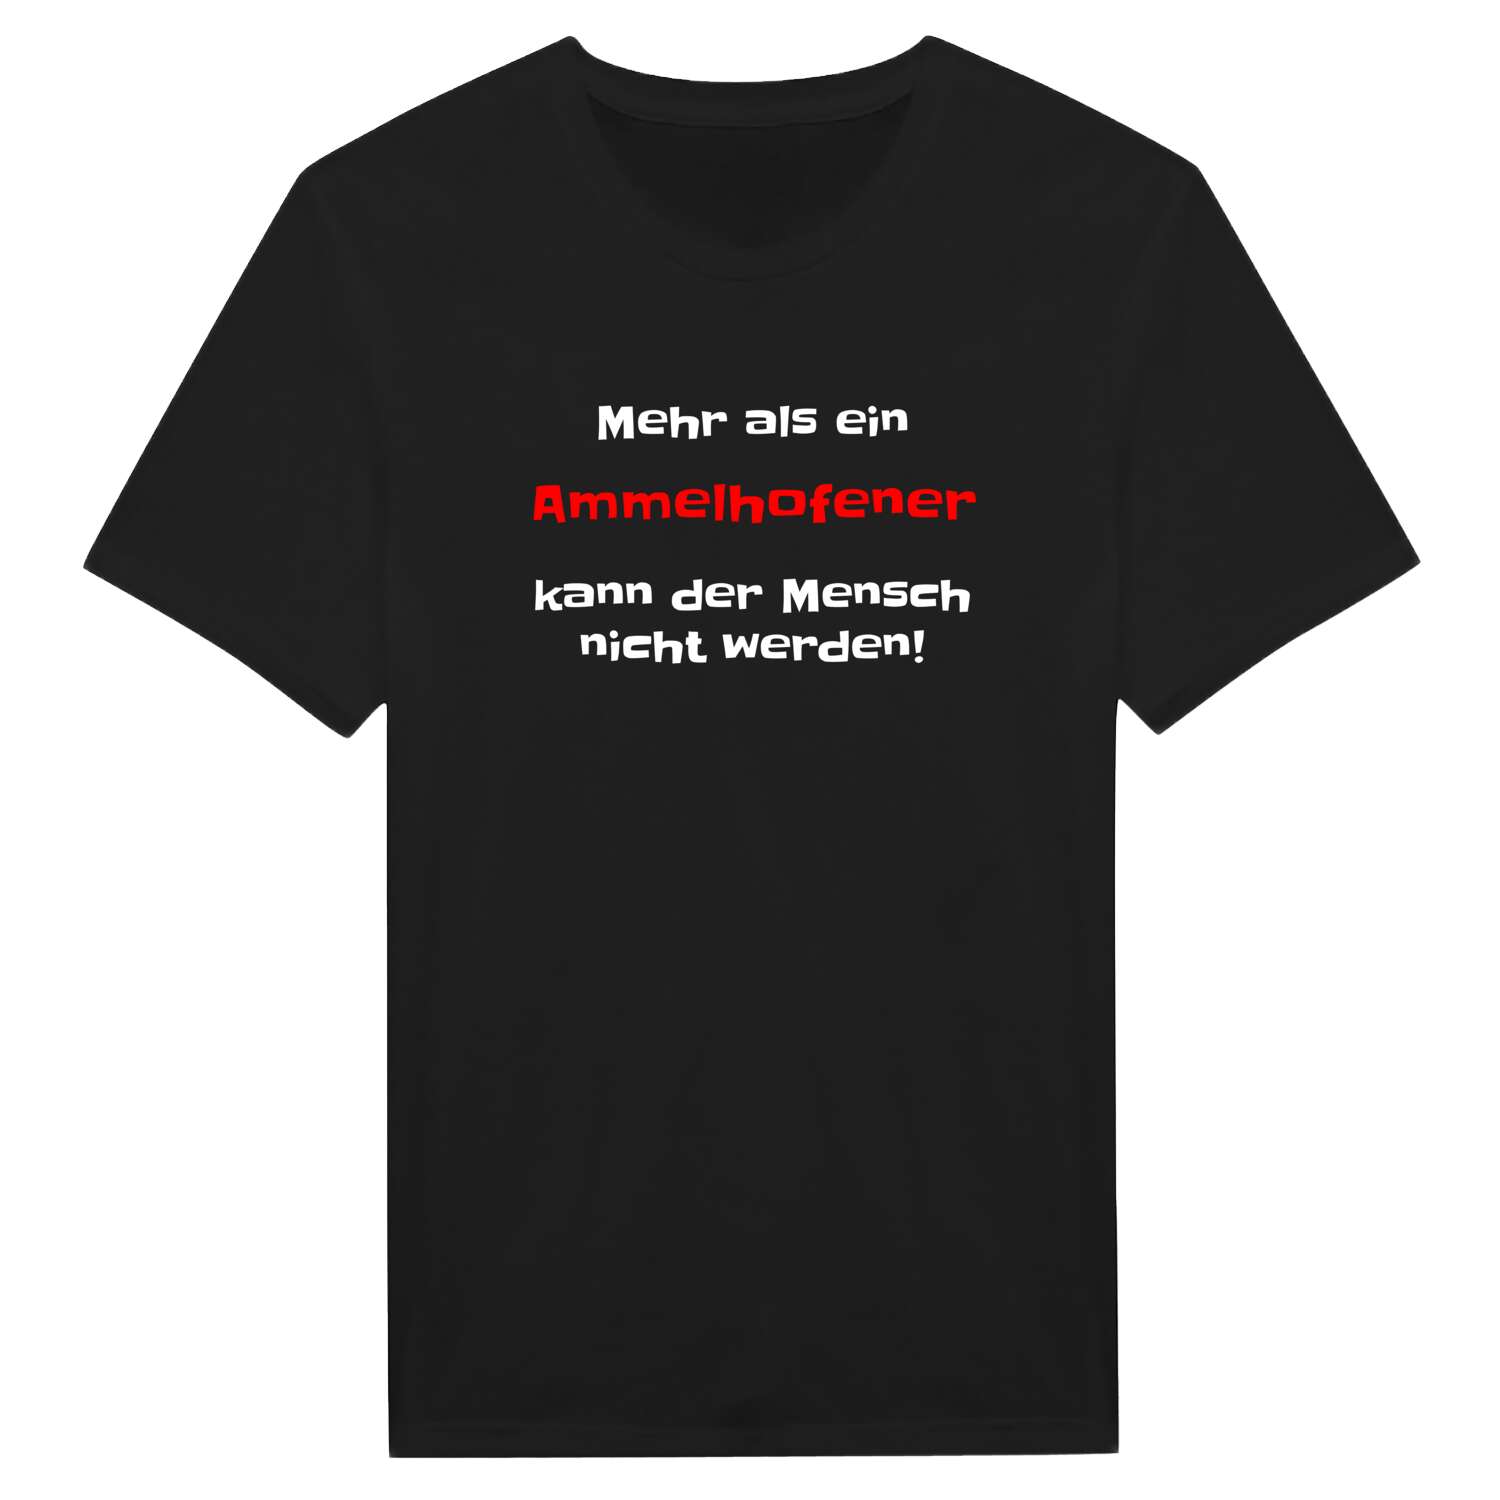 Ammelhofen T-Shirt »Mehr als ein«